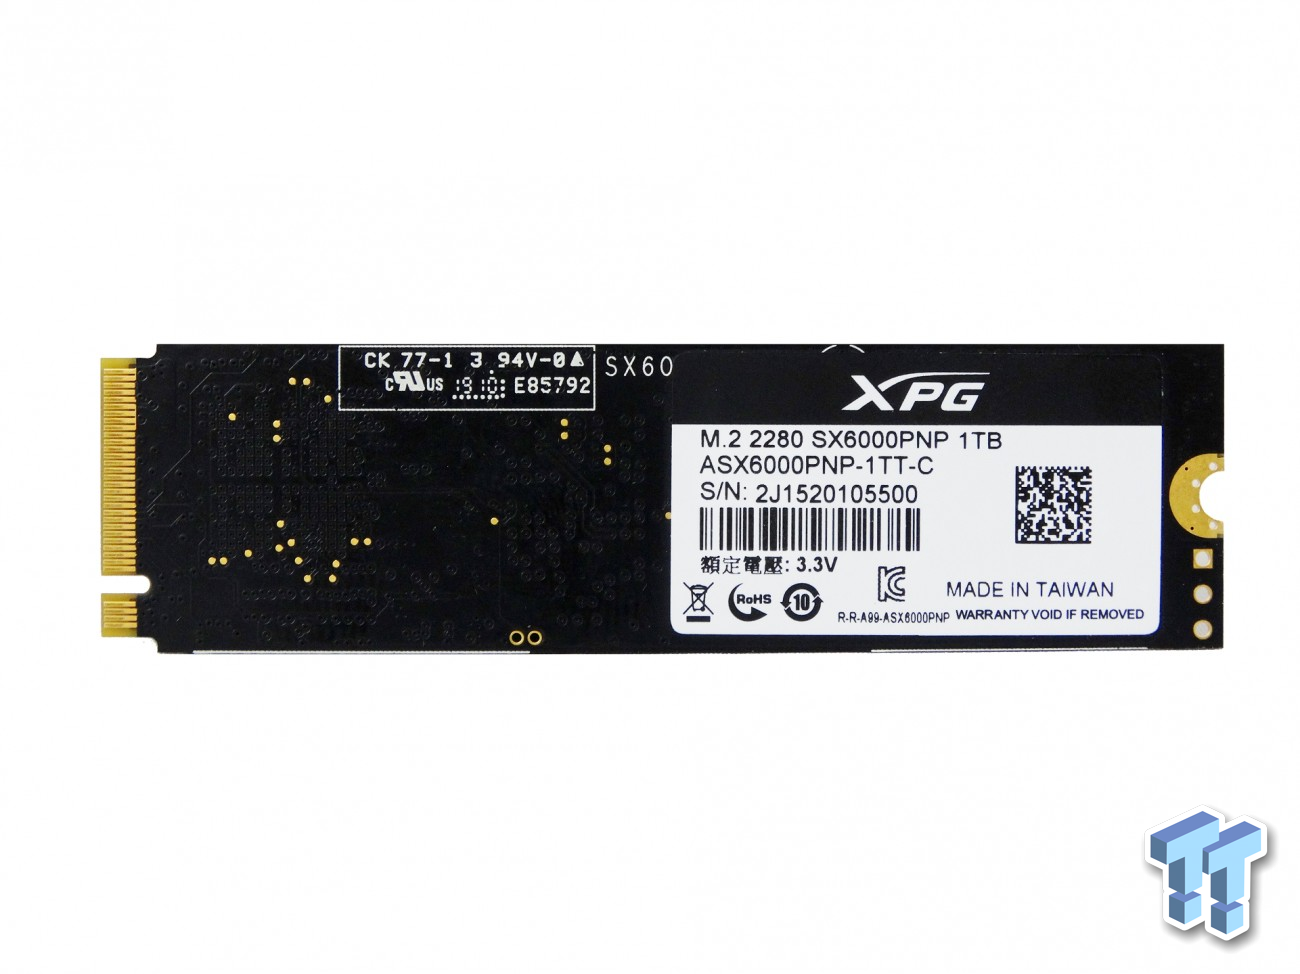 Adata 256Gb Xpg Sx6000 M.2 nvme SSD Pro M.2 2280 PCIe 3D NAND R/W 2100/1200 